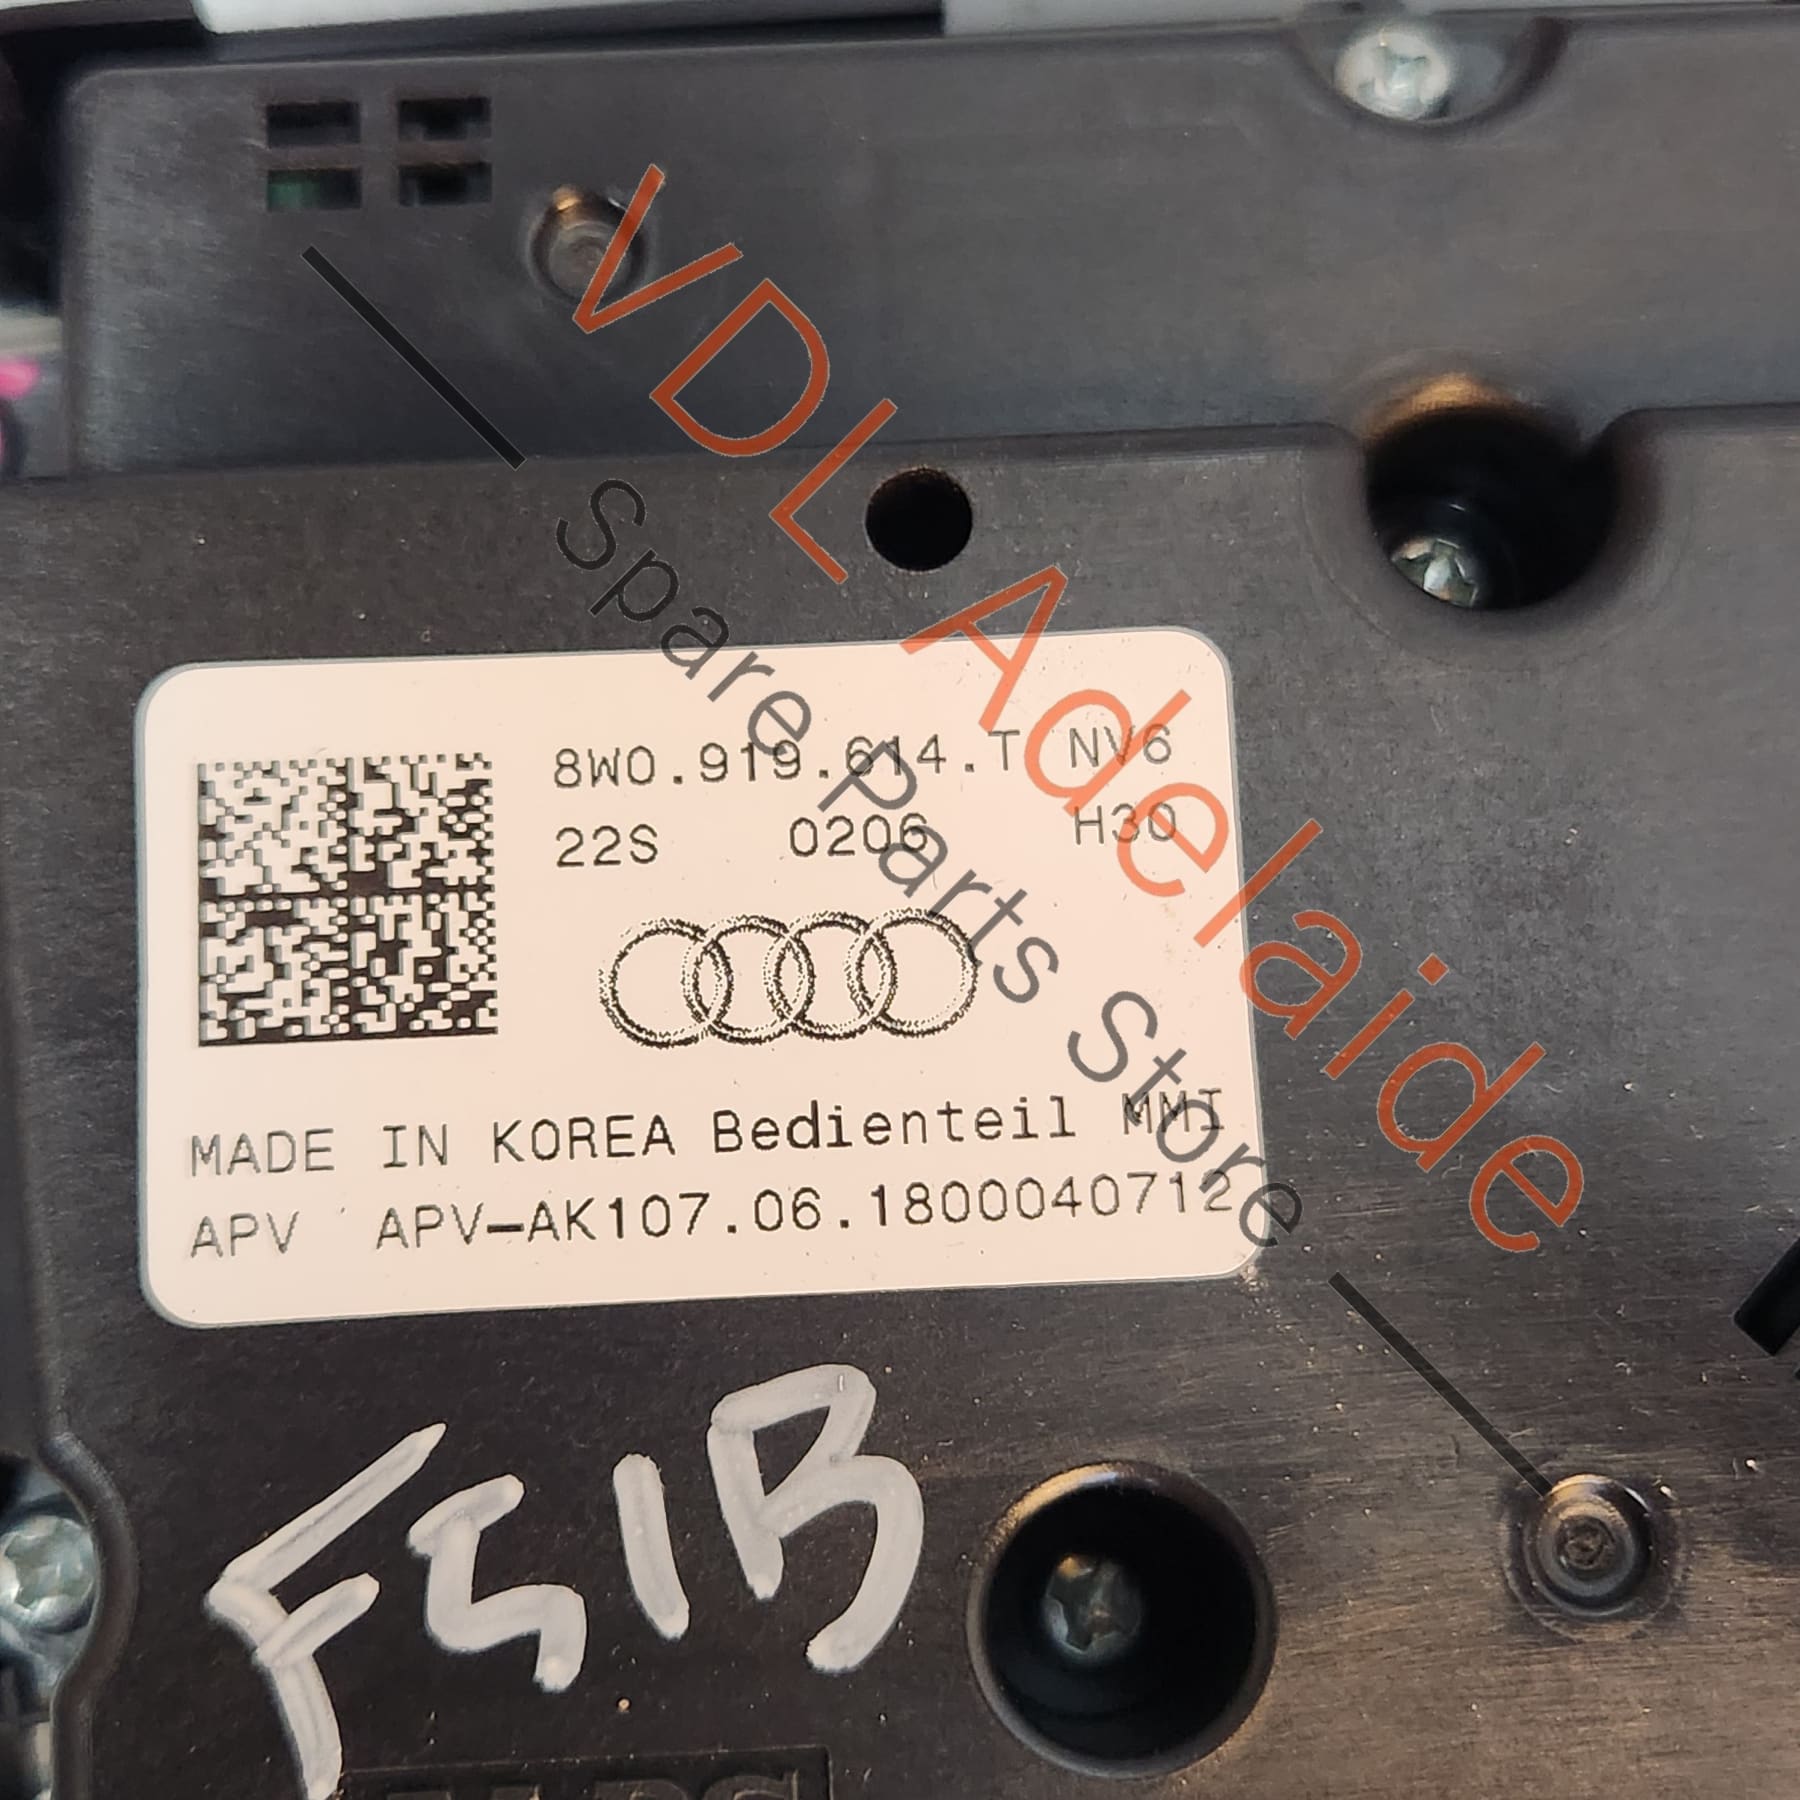 Audi A5 F5 Multimedia MMI Centre Console Switch 8W0919614T 8W0919614T